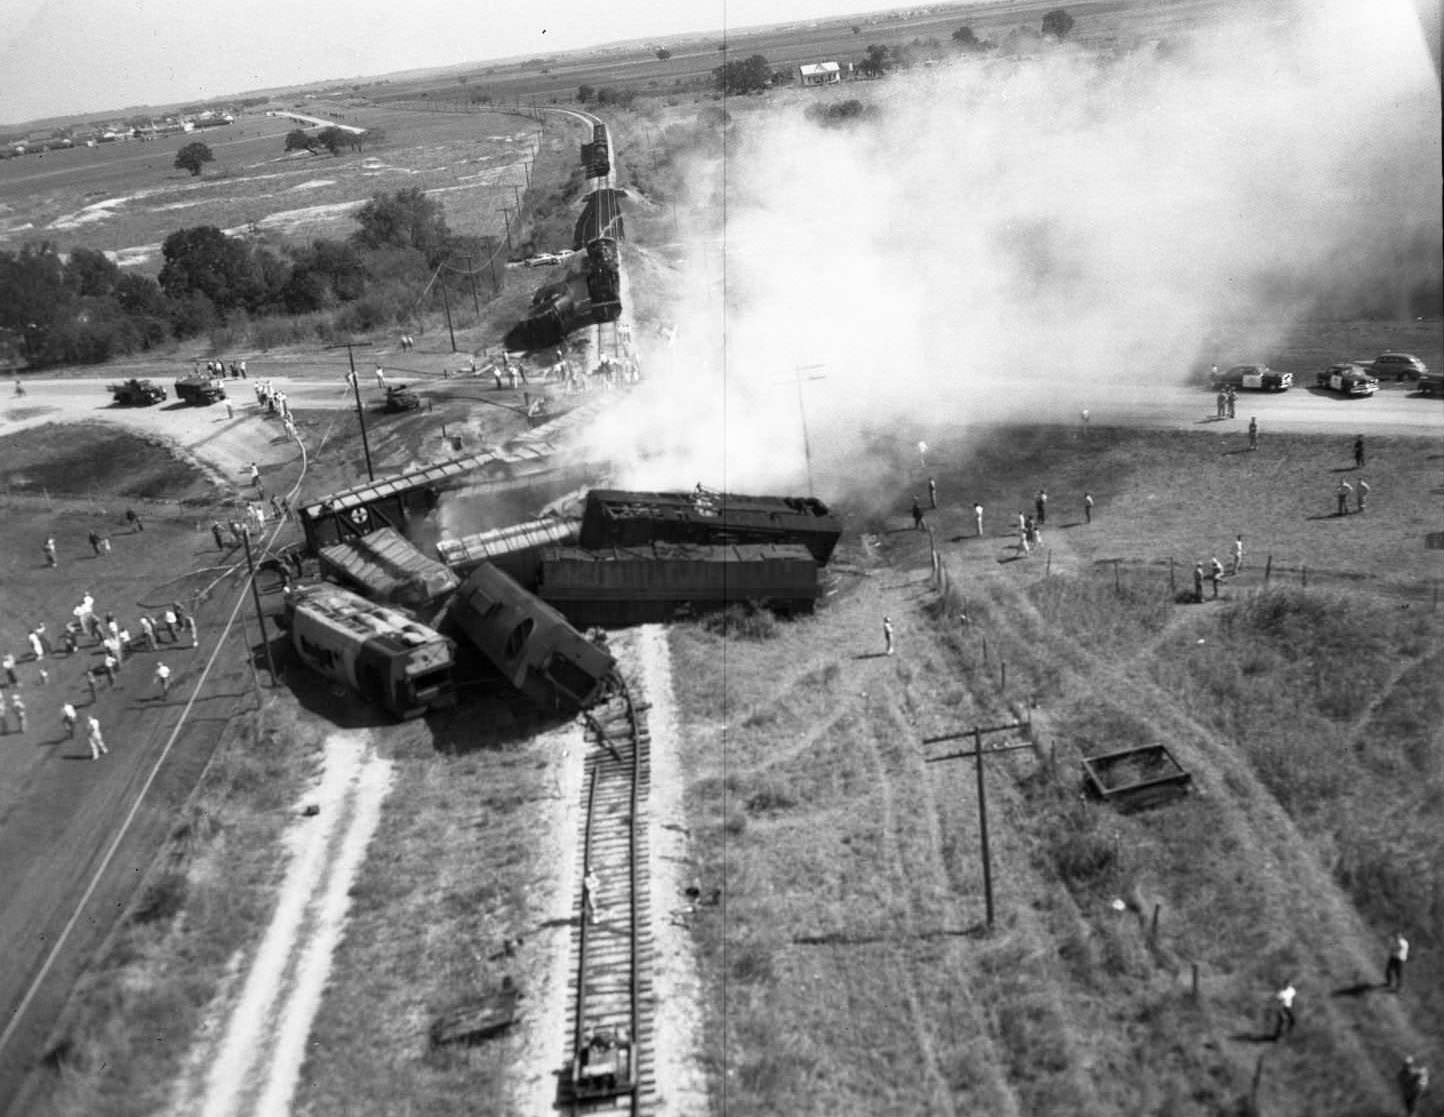 Train Wreck at San Marcos, 1950